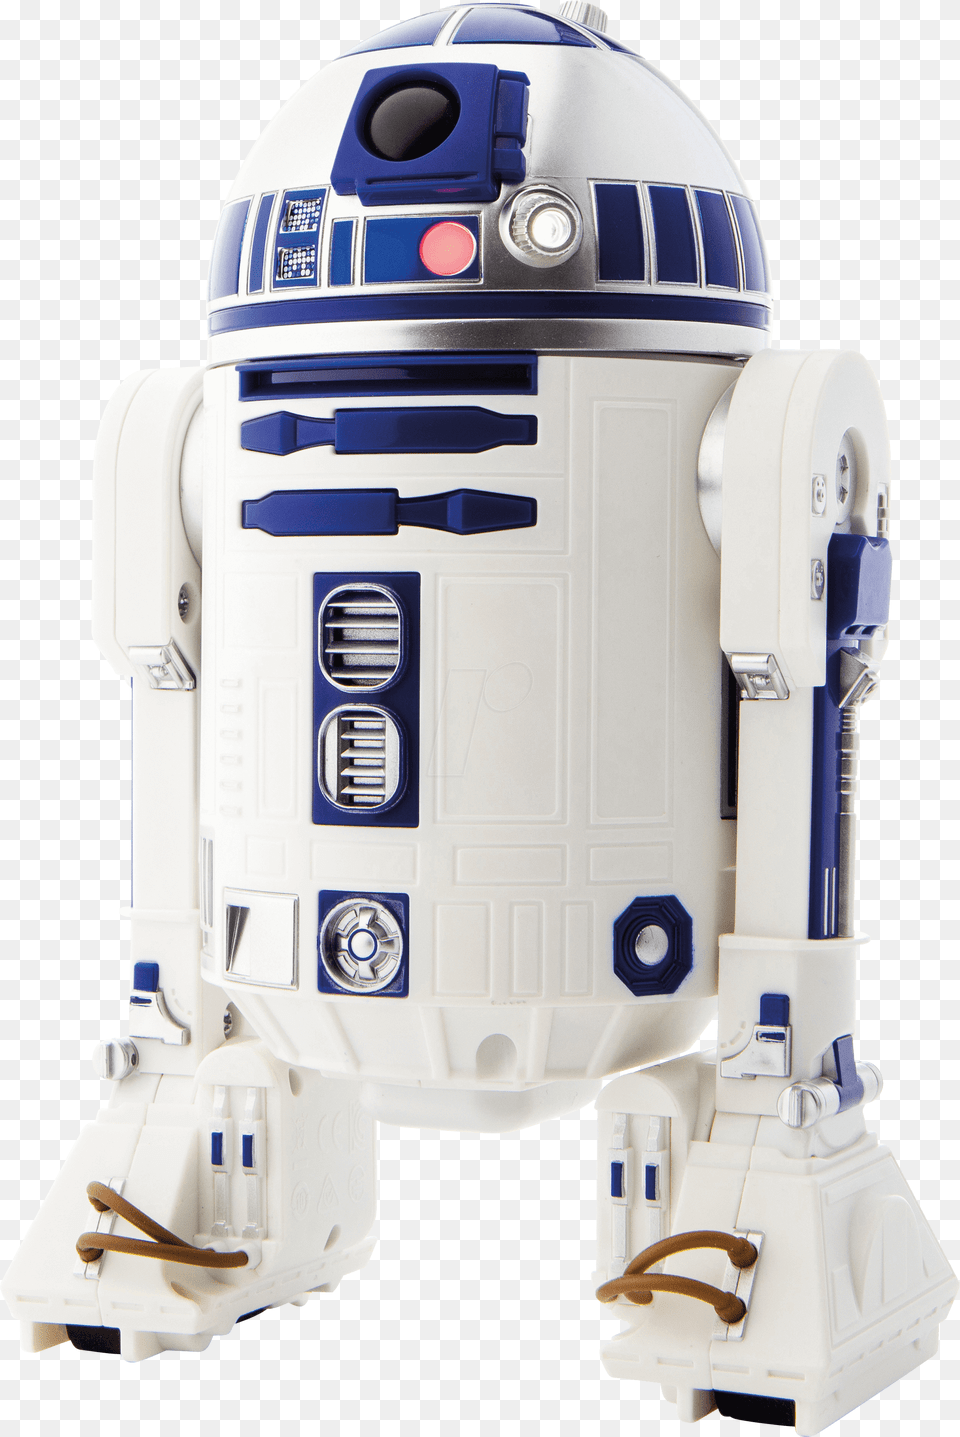 App Enabled Droid Star Wars R2 D2 Sphero R201row Sphero R2 D2 App Enabled Droid, Robot, Mailbox Free Transparent Png